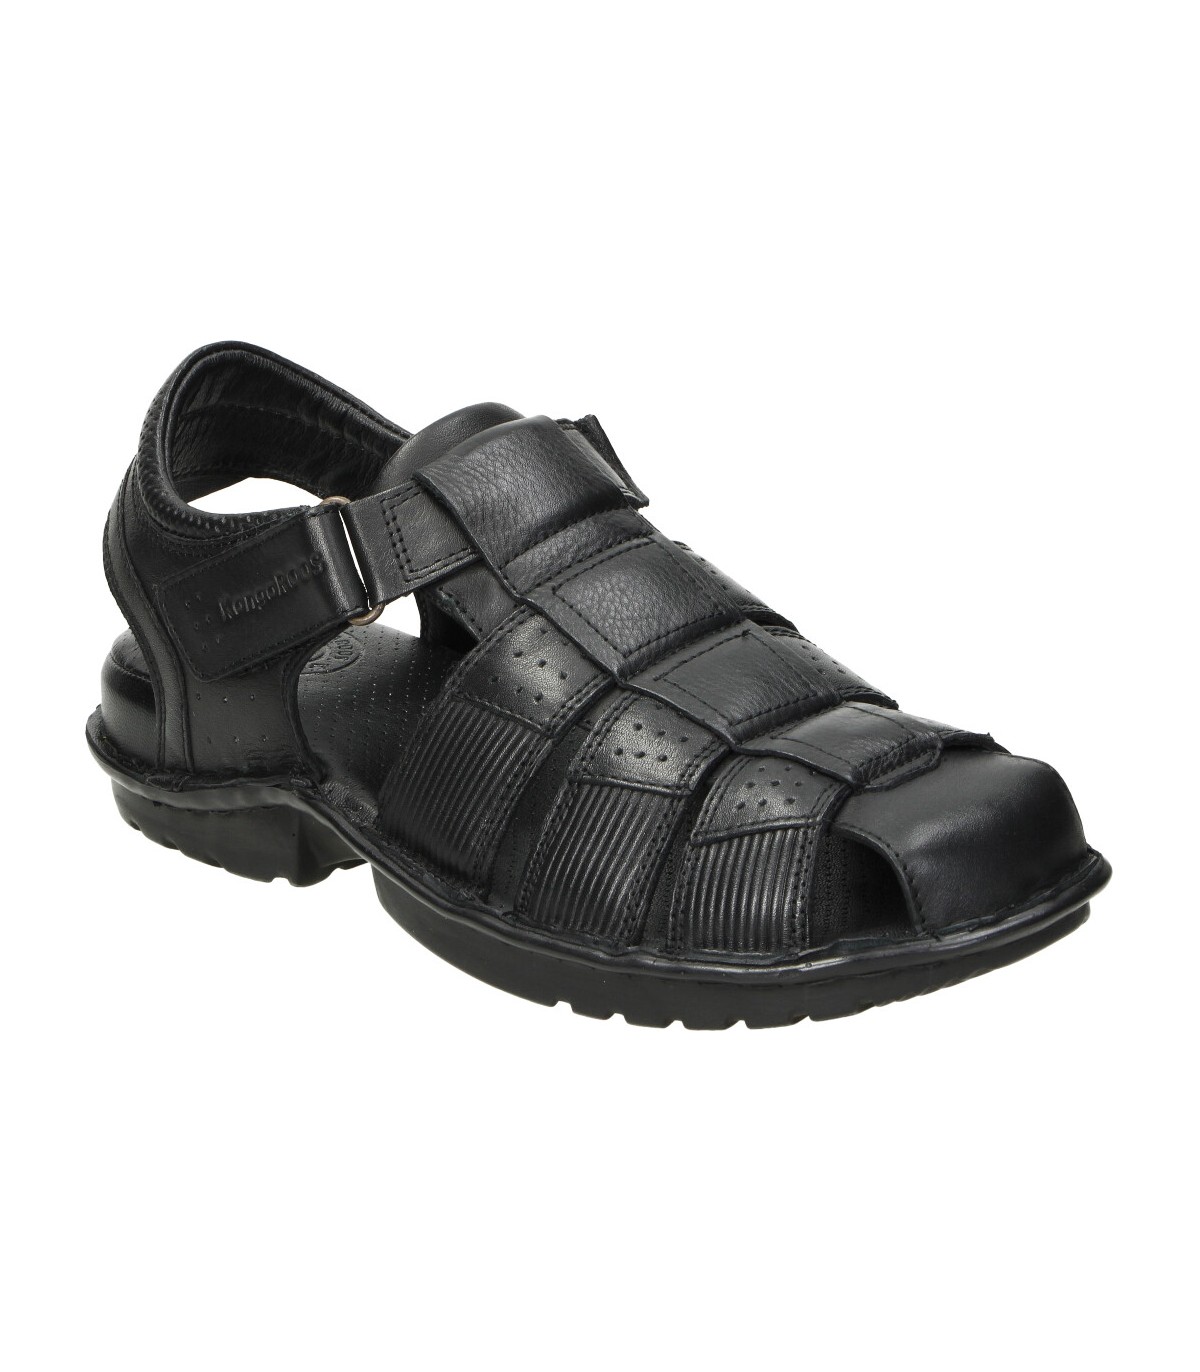 Zapatos negros para hombre KANGAROOS 472-11 online en MEGACALZADO